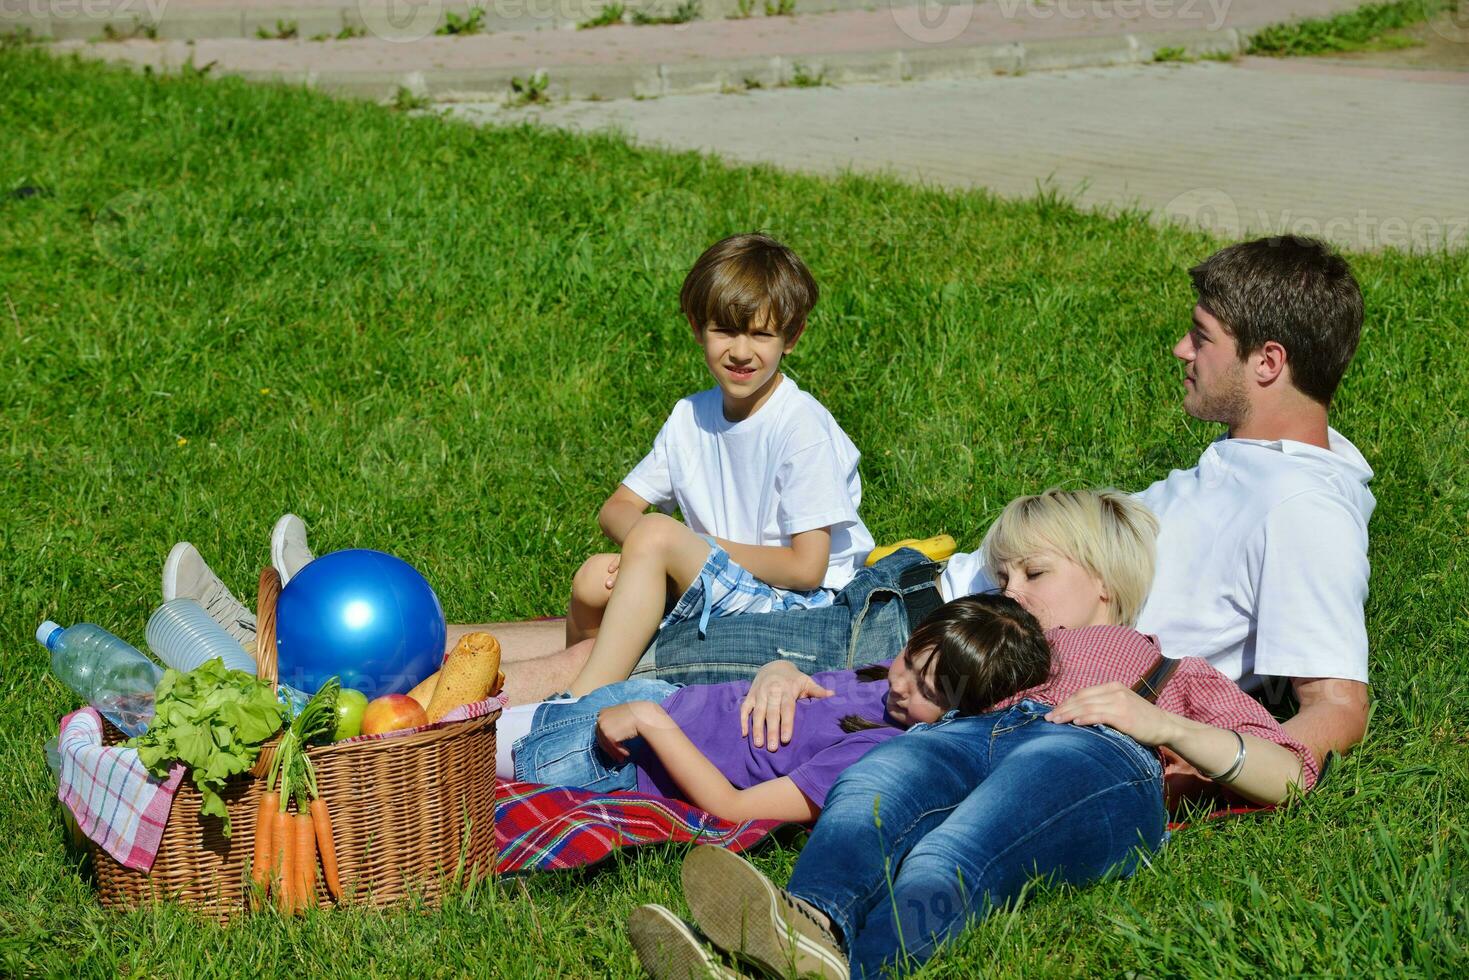 famille heureuse jouant ensemble dans un pique-nique à l'extérieur photo